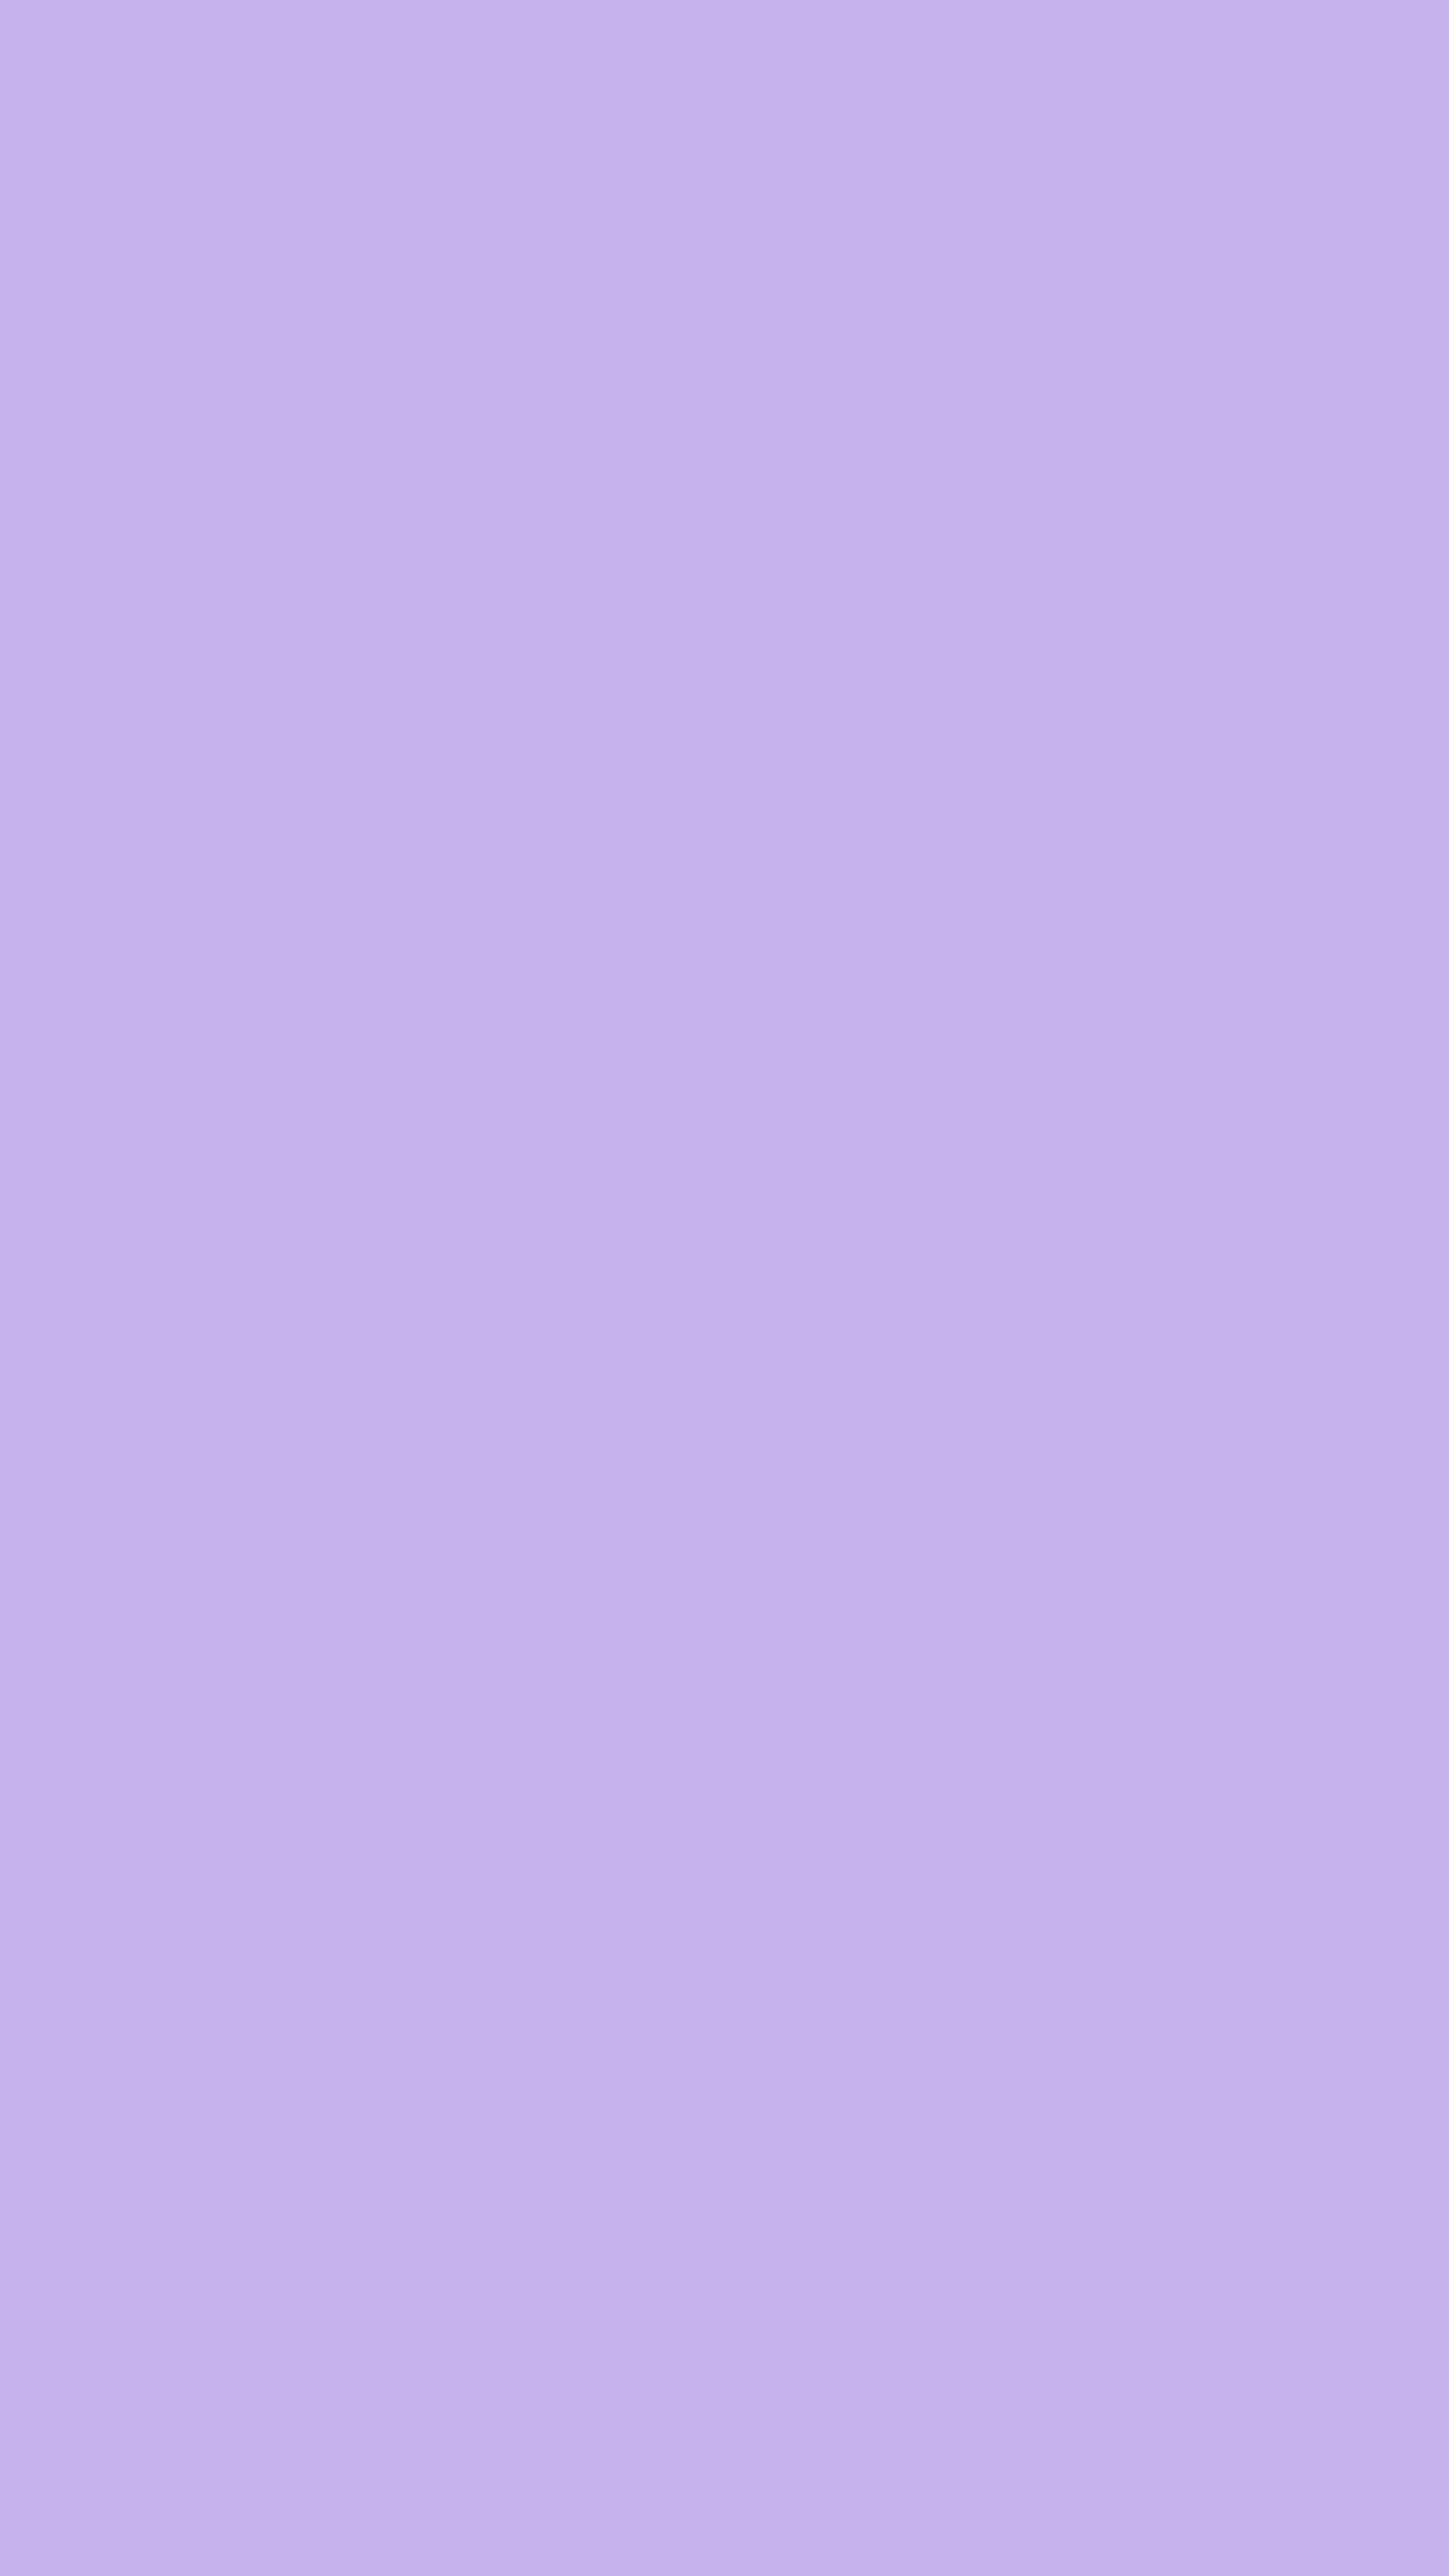 Soothing Purple Shade ورق الجدران[53e308a63baa43feba68]